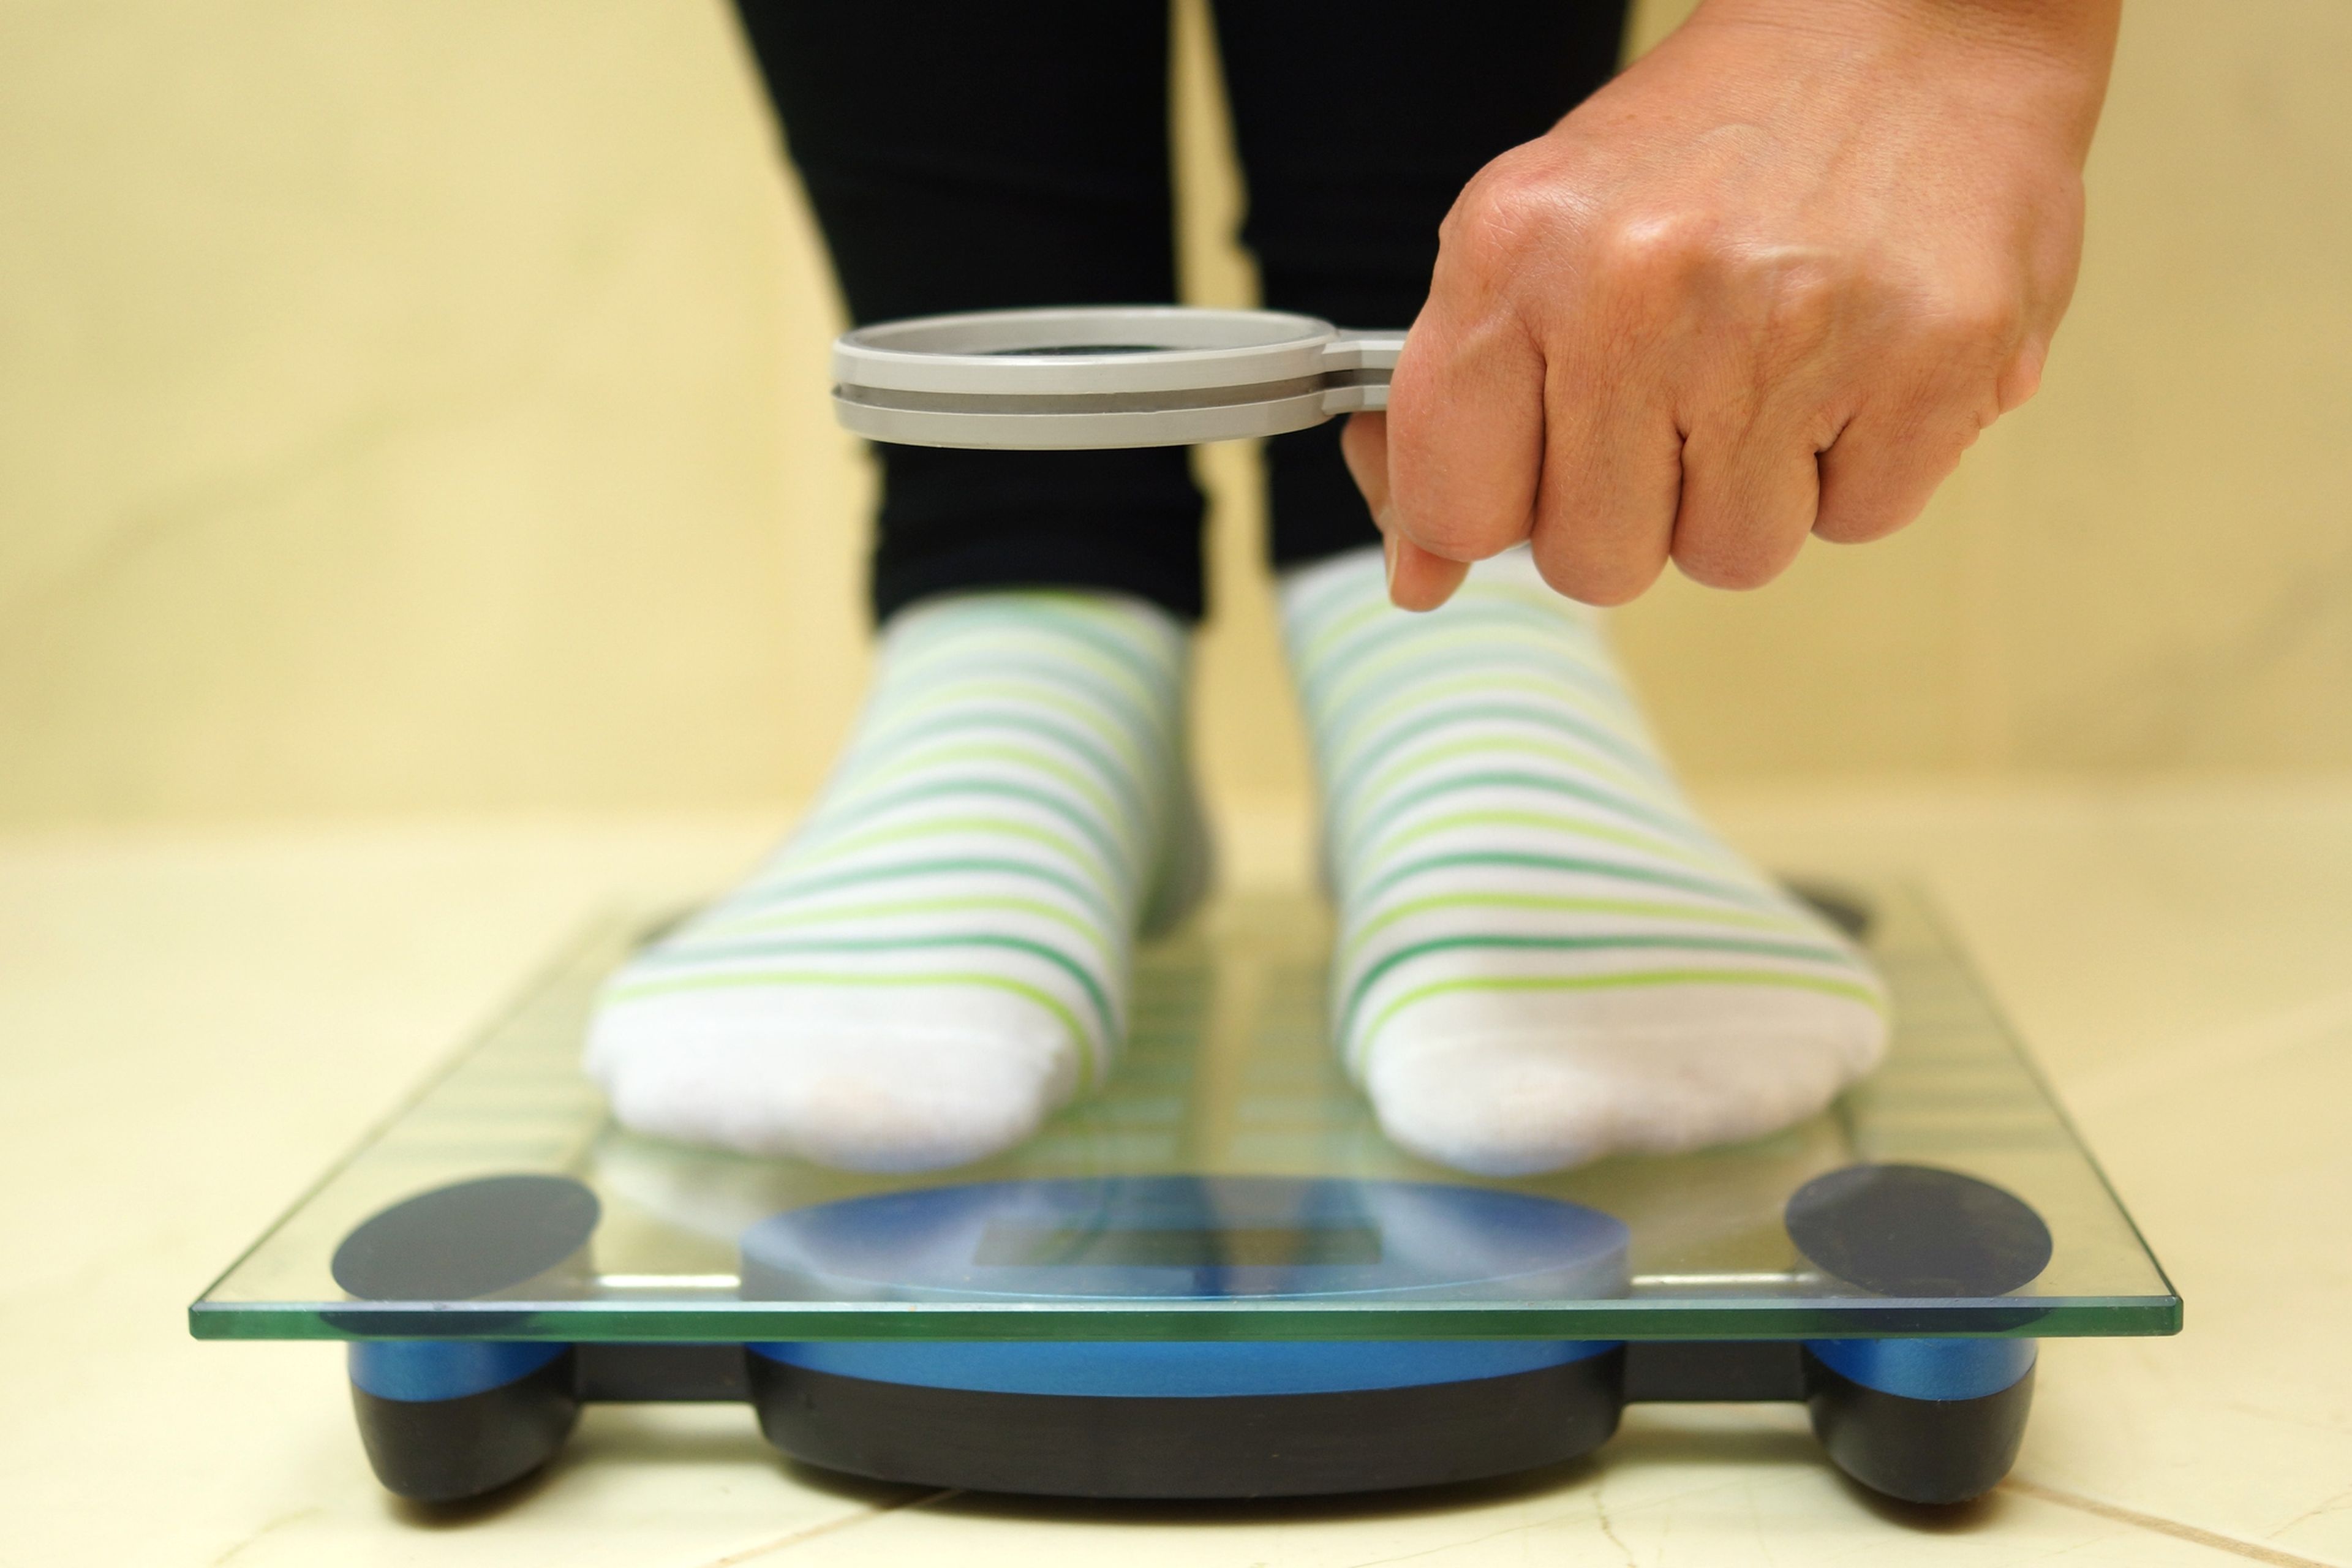 Los médicos descubren un elemento clave para bajar peso, que apenas se tenía en cuenta